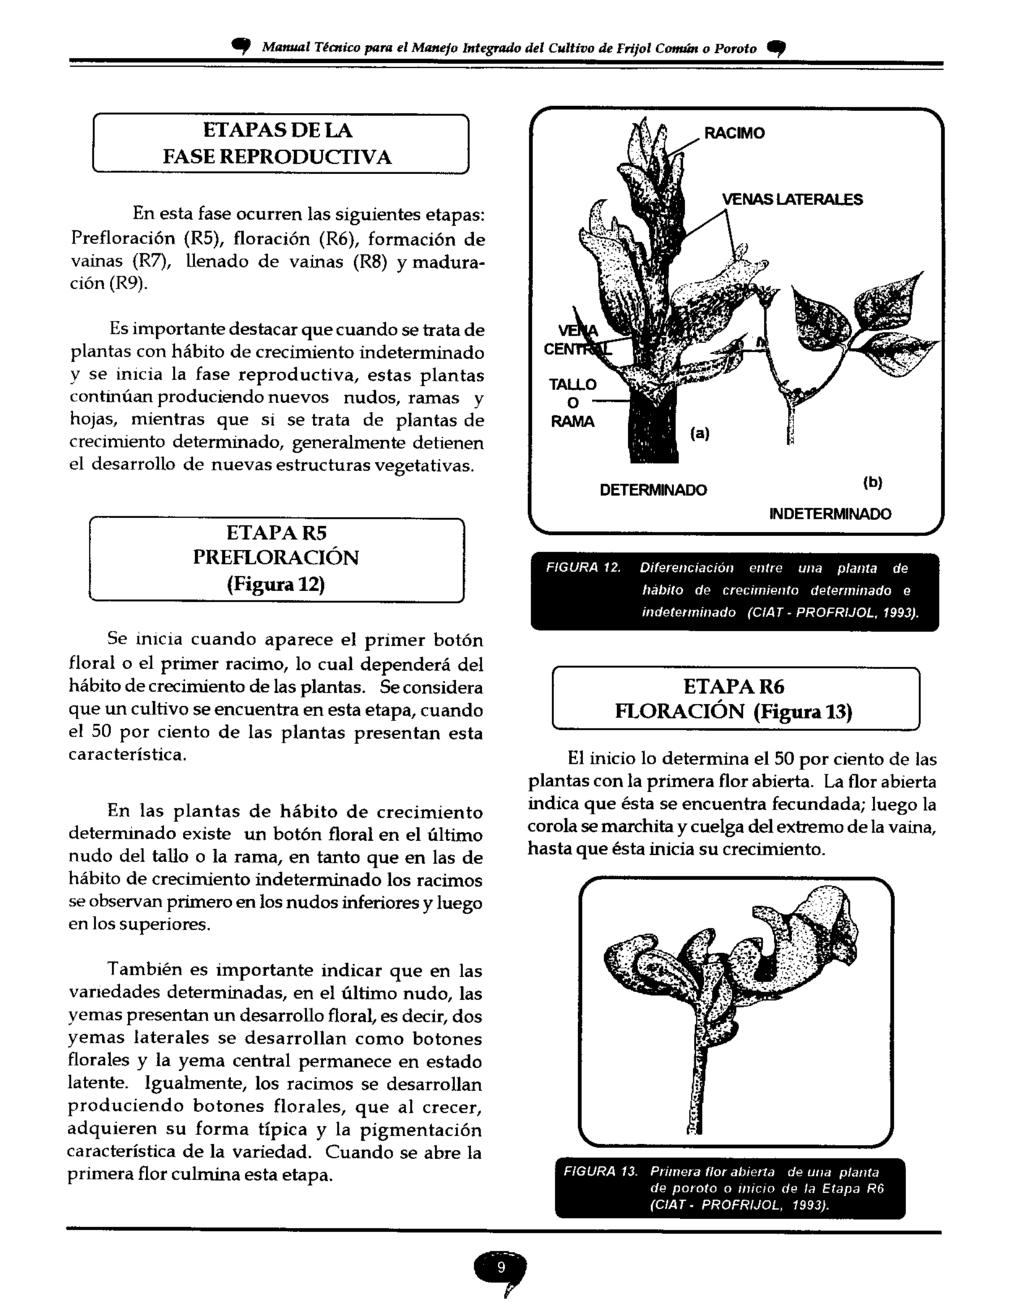 19 Manual Técnico para el Manejo Integrado del Cultivo de Frijol Común o Poroto, ETAPAS DE LA FASE REPRODUCTIVA En esta fase ocurren las siguientes etapas: Prefloración (R5), floración (R6),